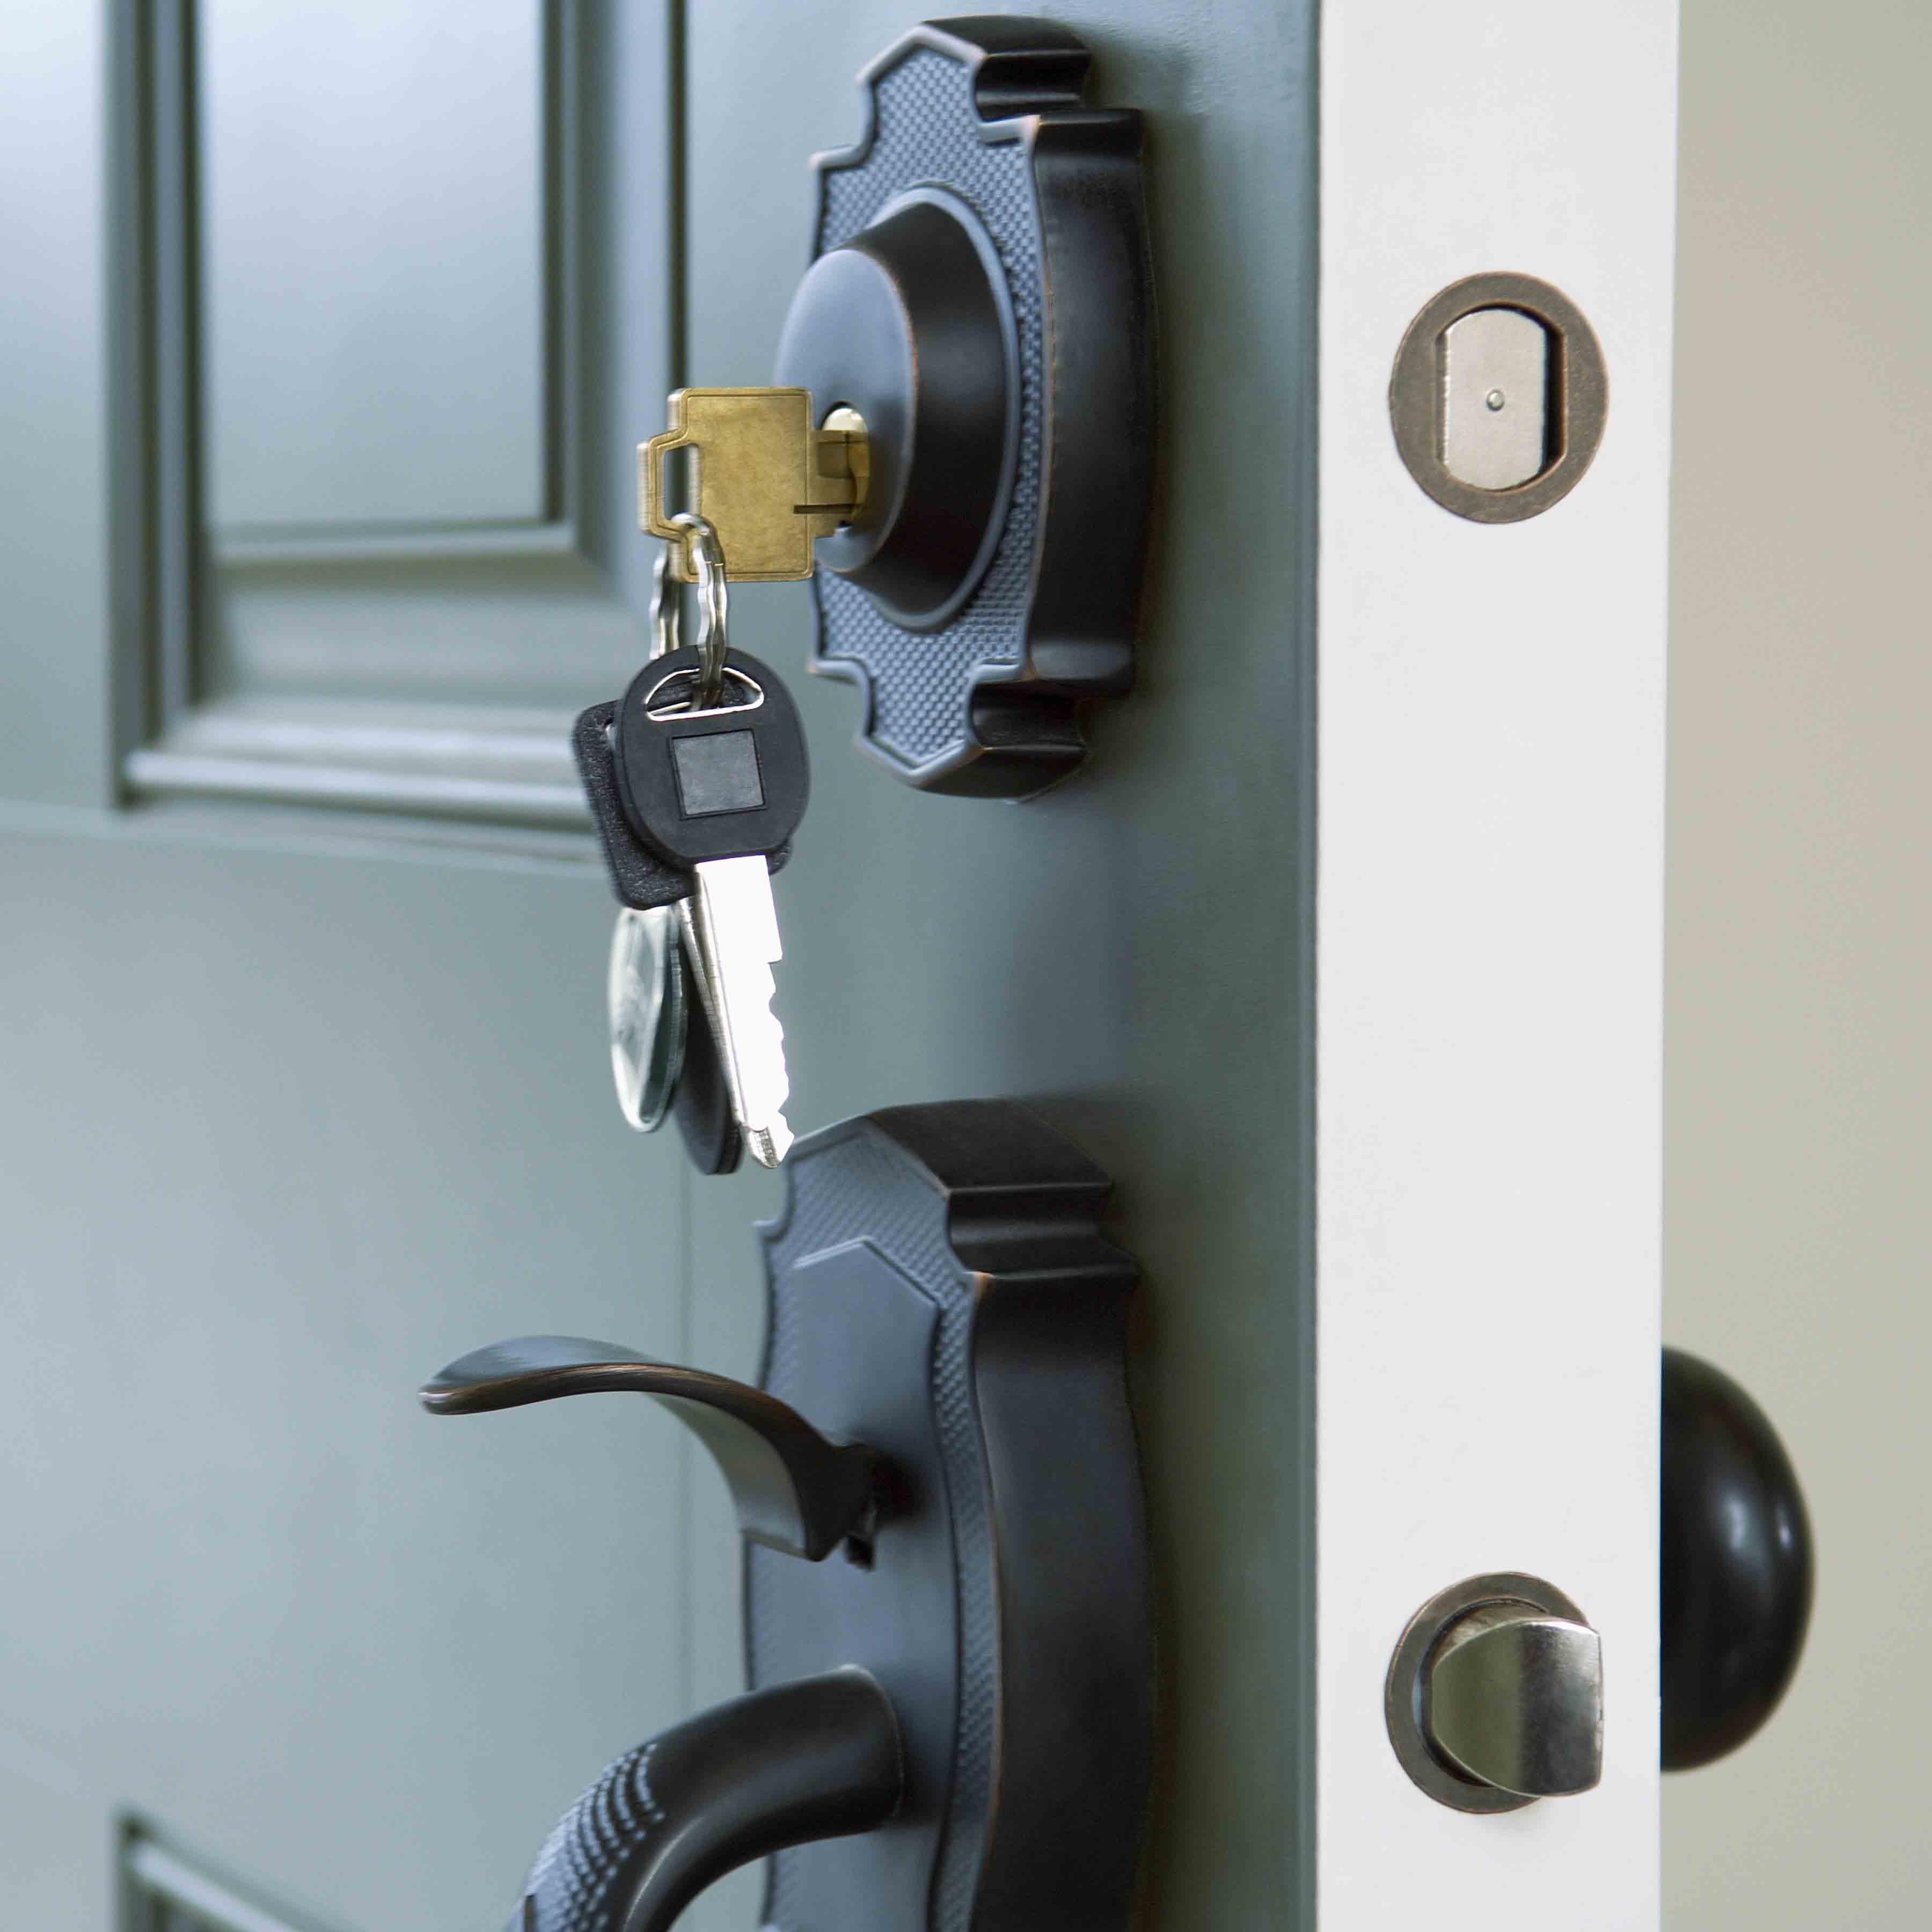 Front door knob and keys